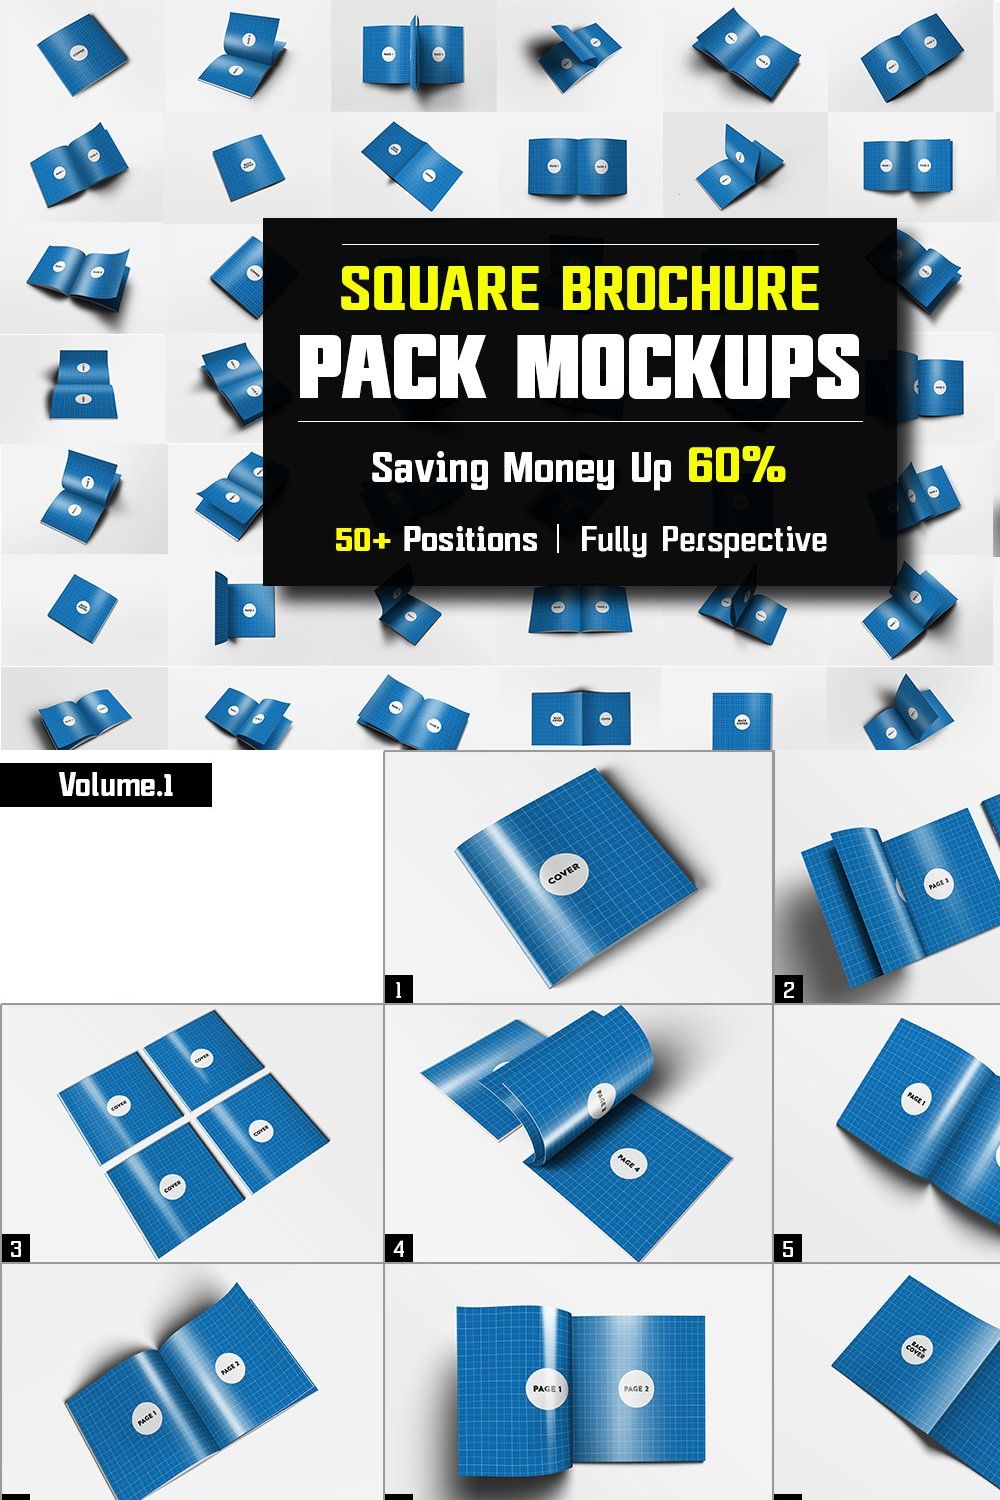 Square Brochure Mockups Pack Bundle pinterest preview image.